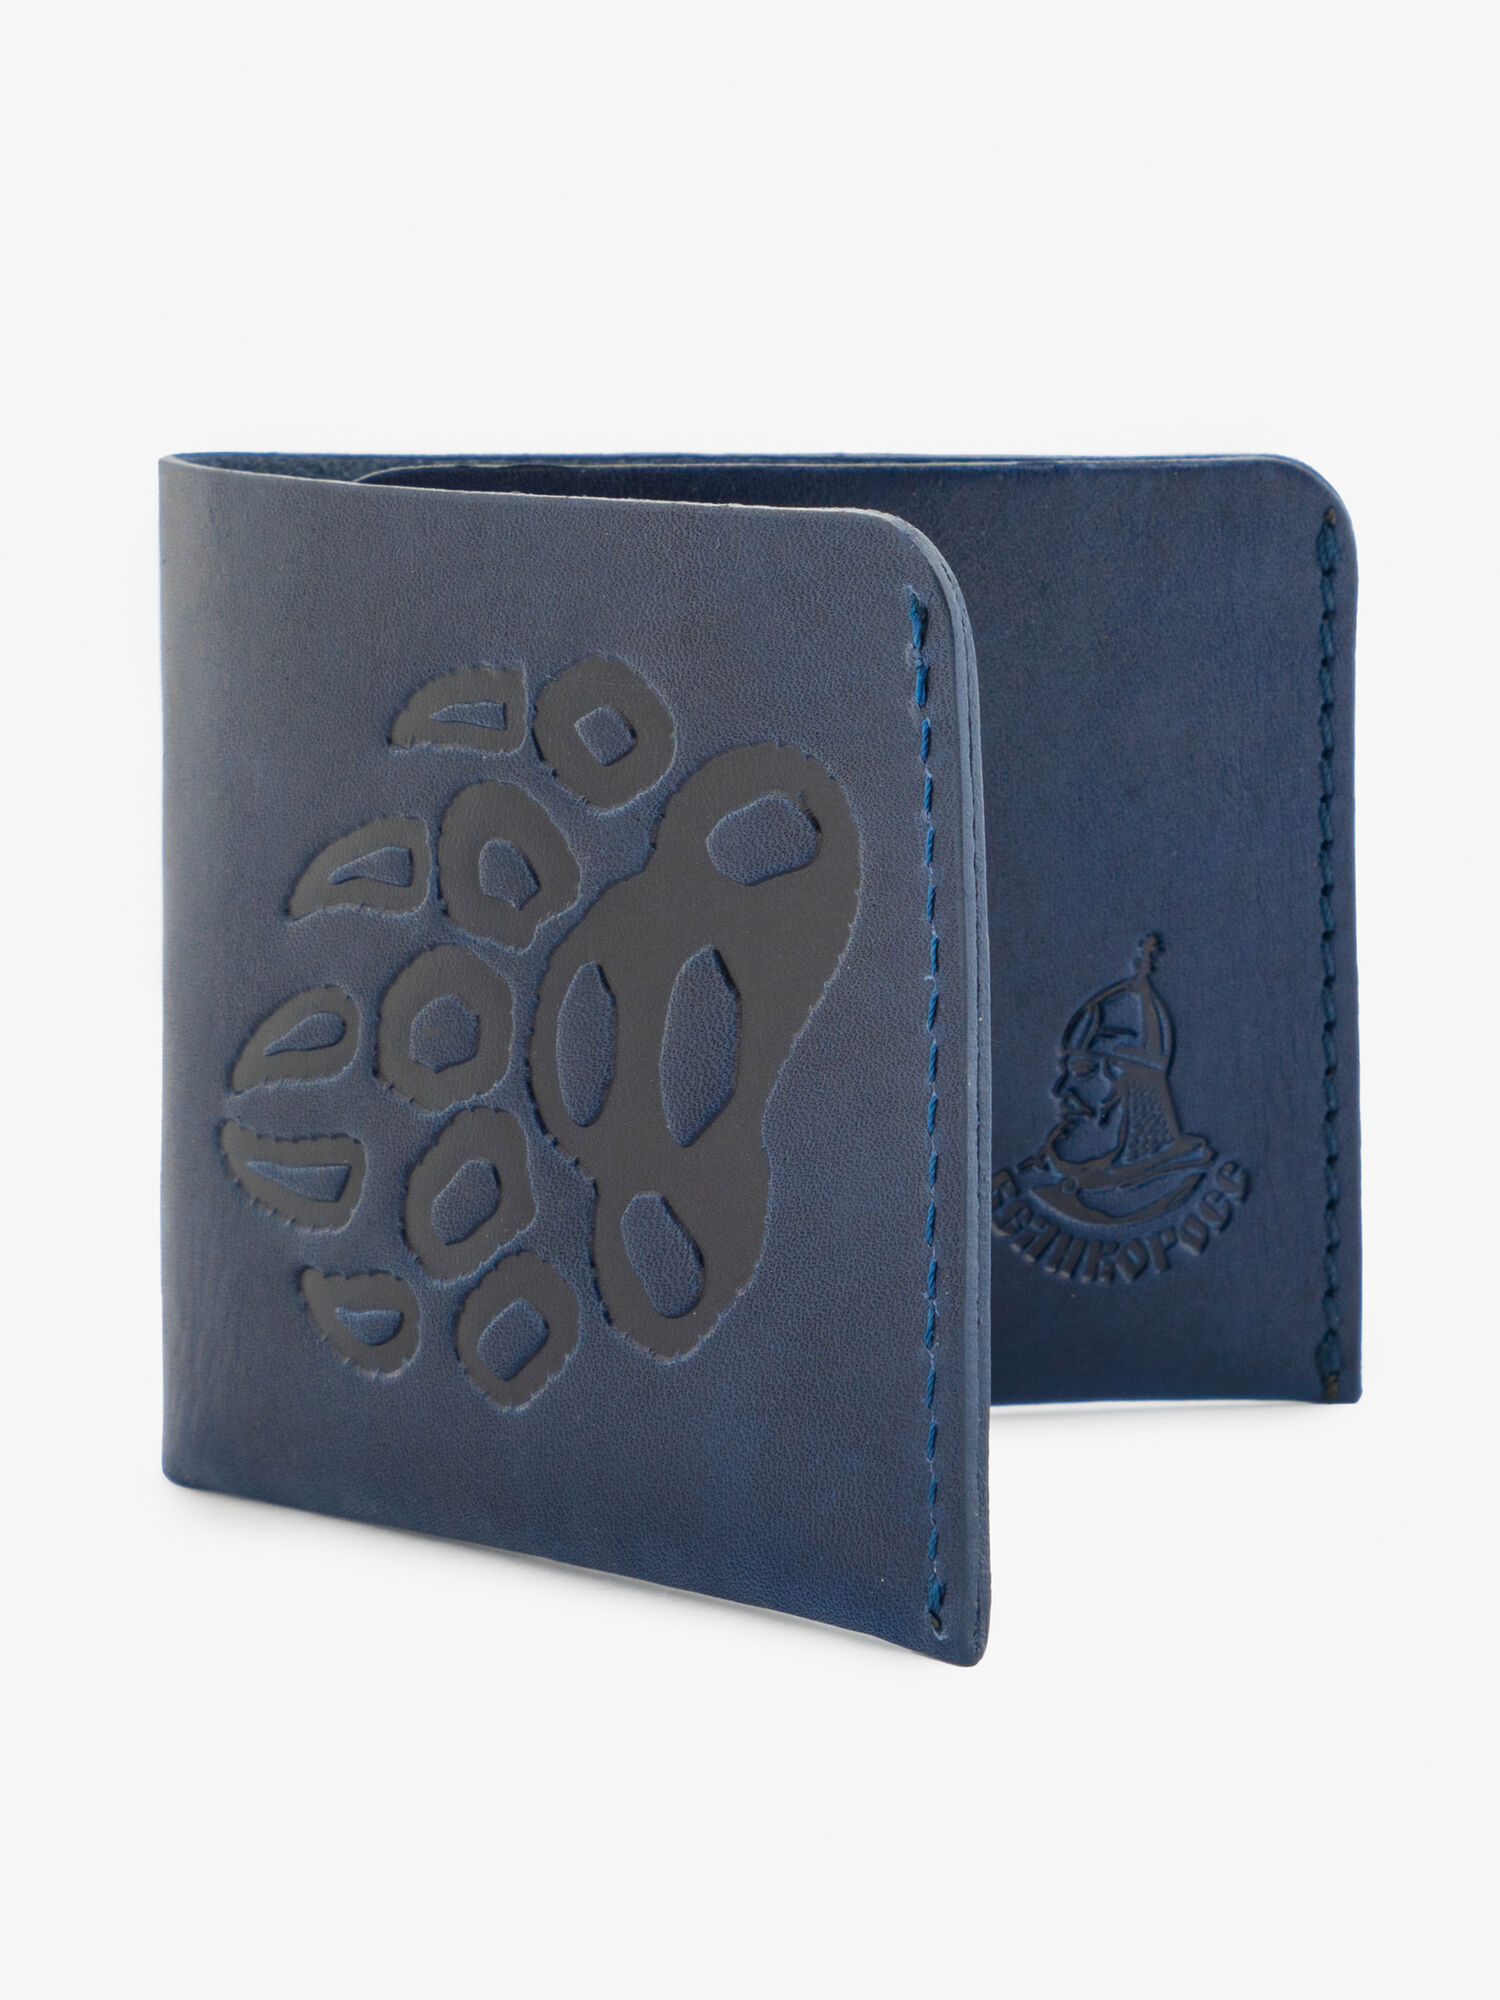 Бумажник-Компактный из натуральной кожи «Краст» тёмно-синего цвета